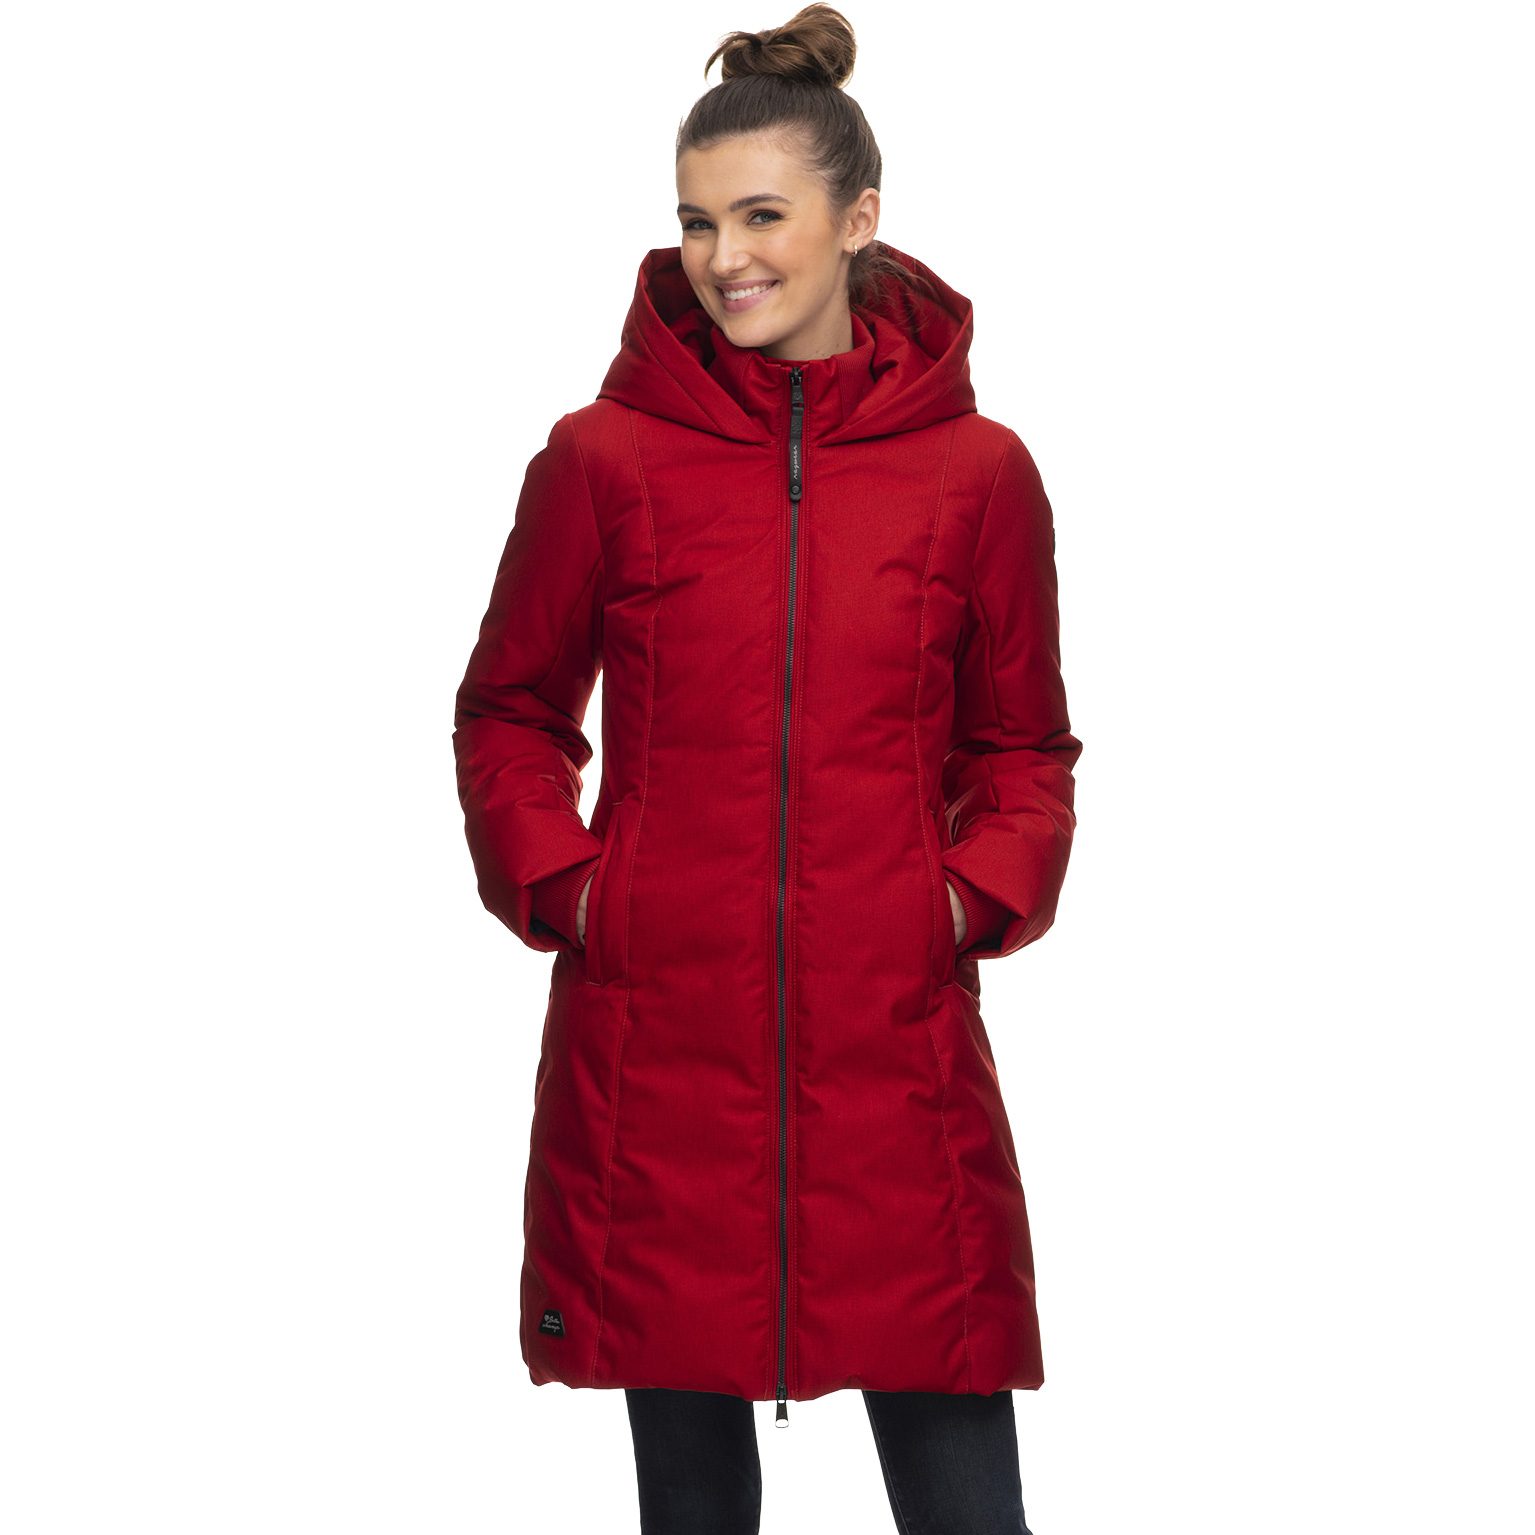 ragwear - Amarri Coat Women Sport red Shop Bittl at